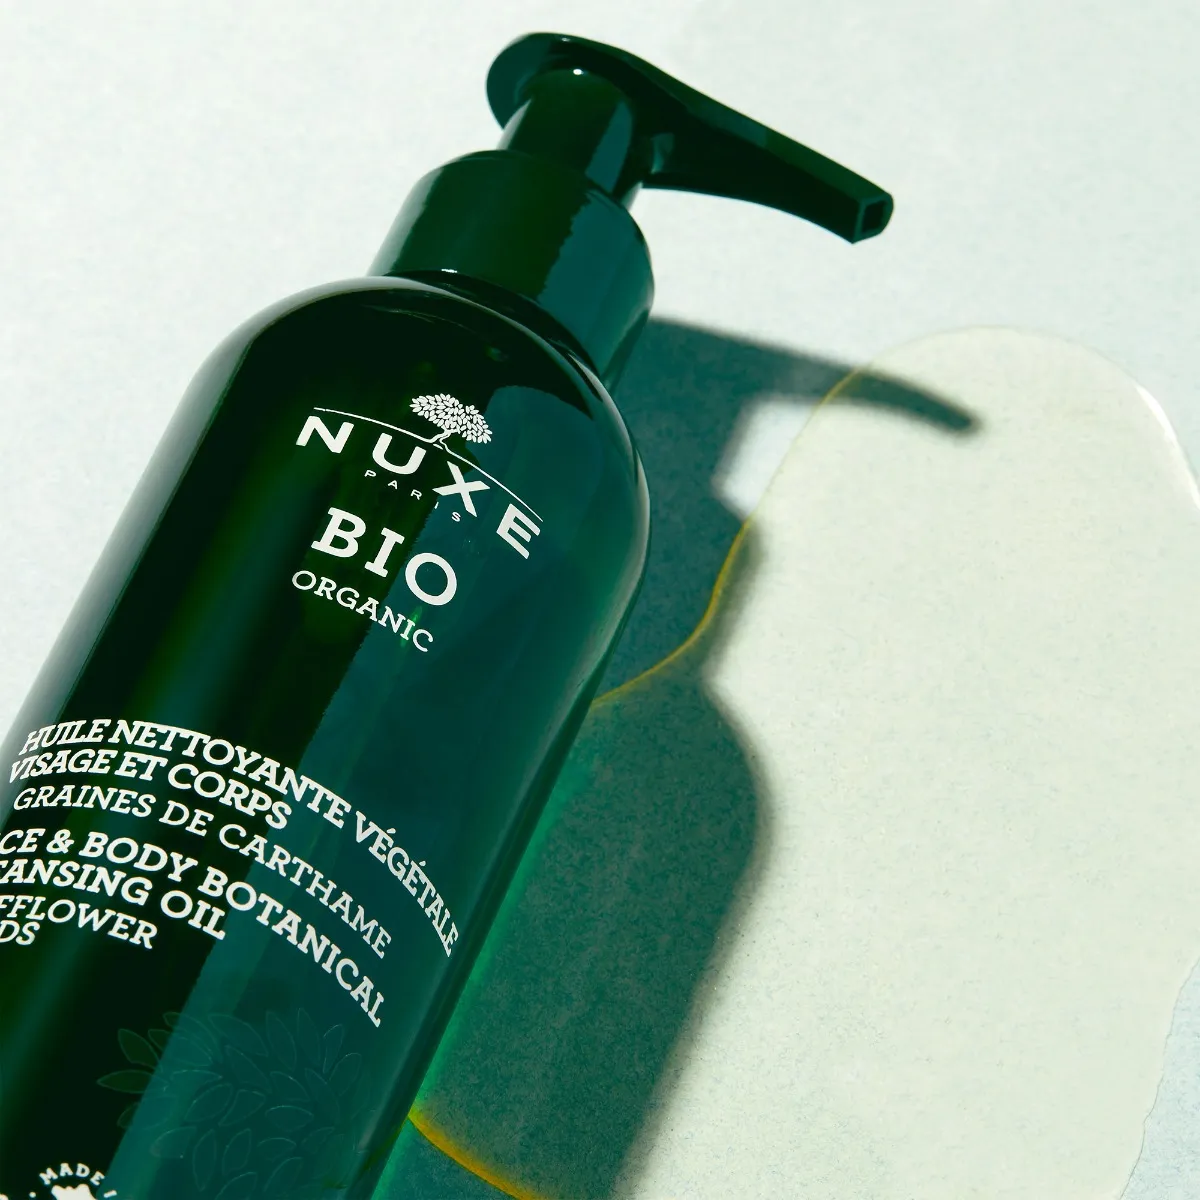 Nuxe Bio, olejek do mycia twarzy i ciała, 200 ml 